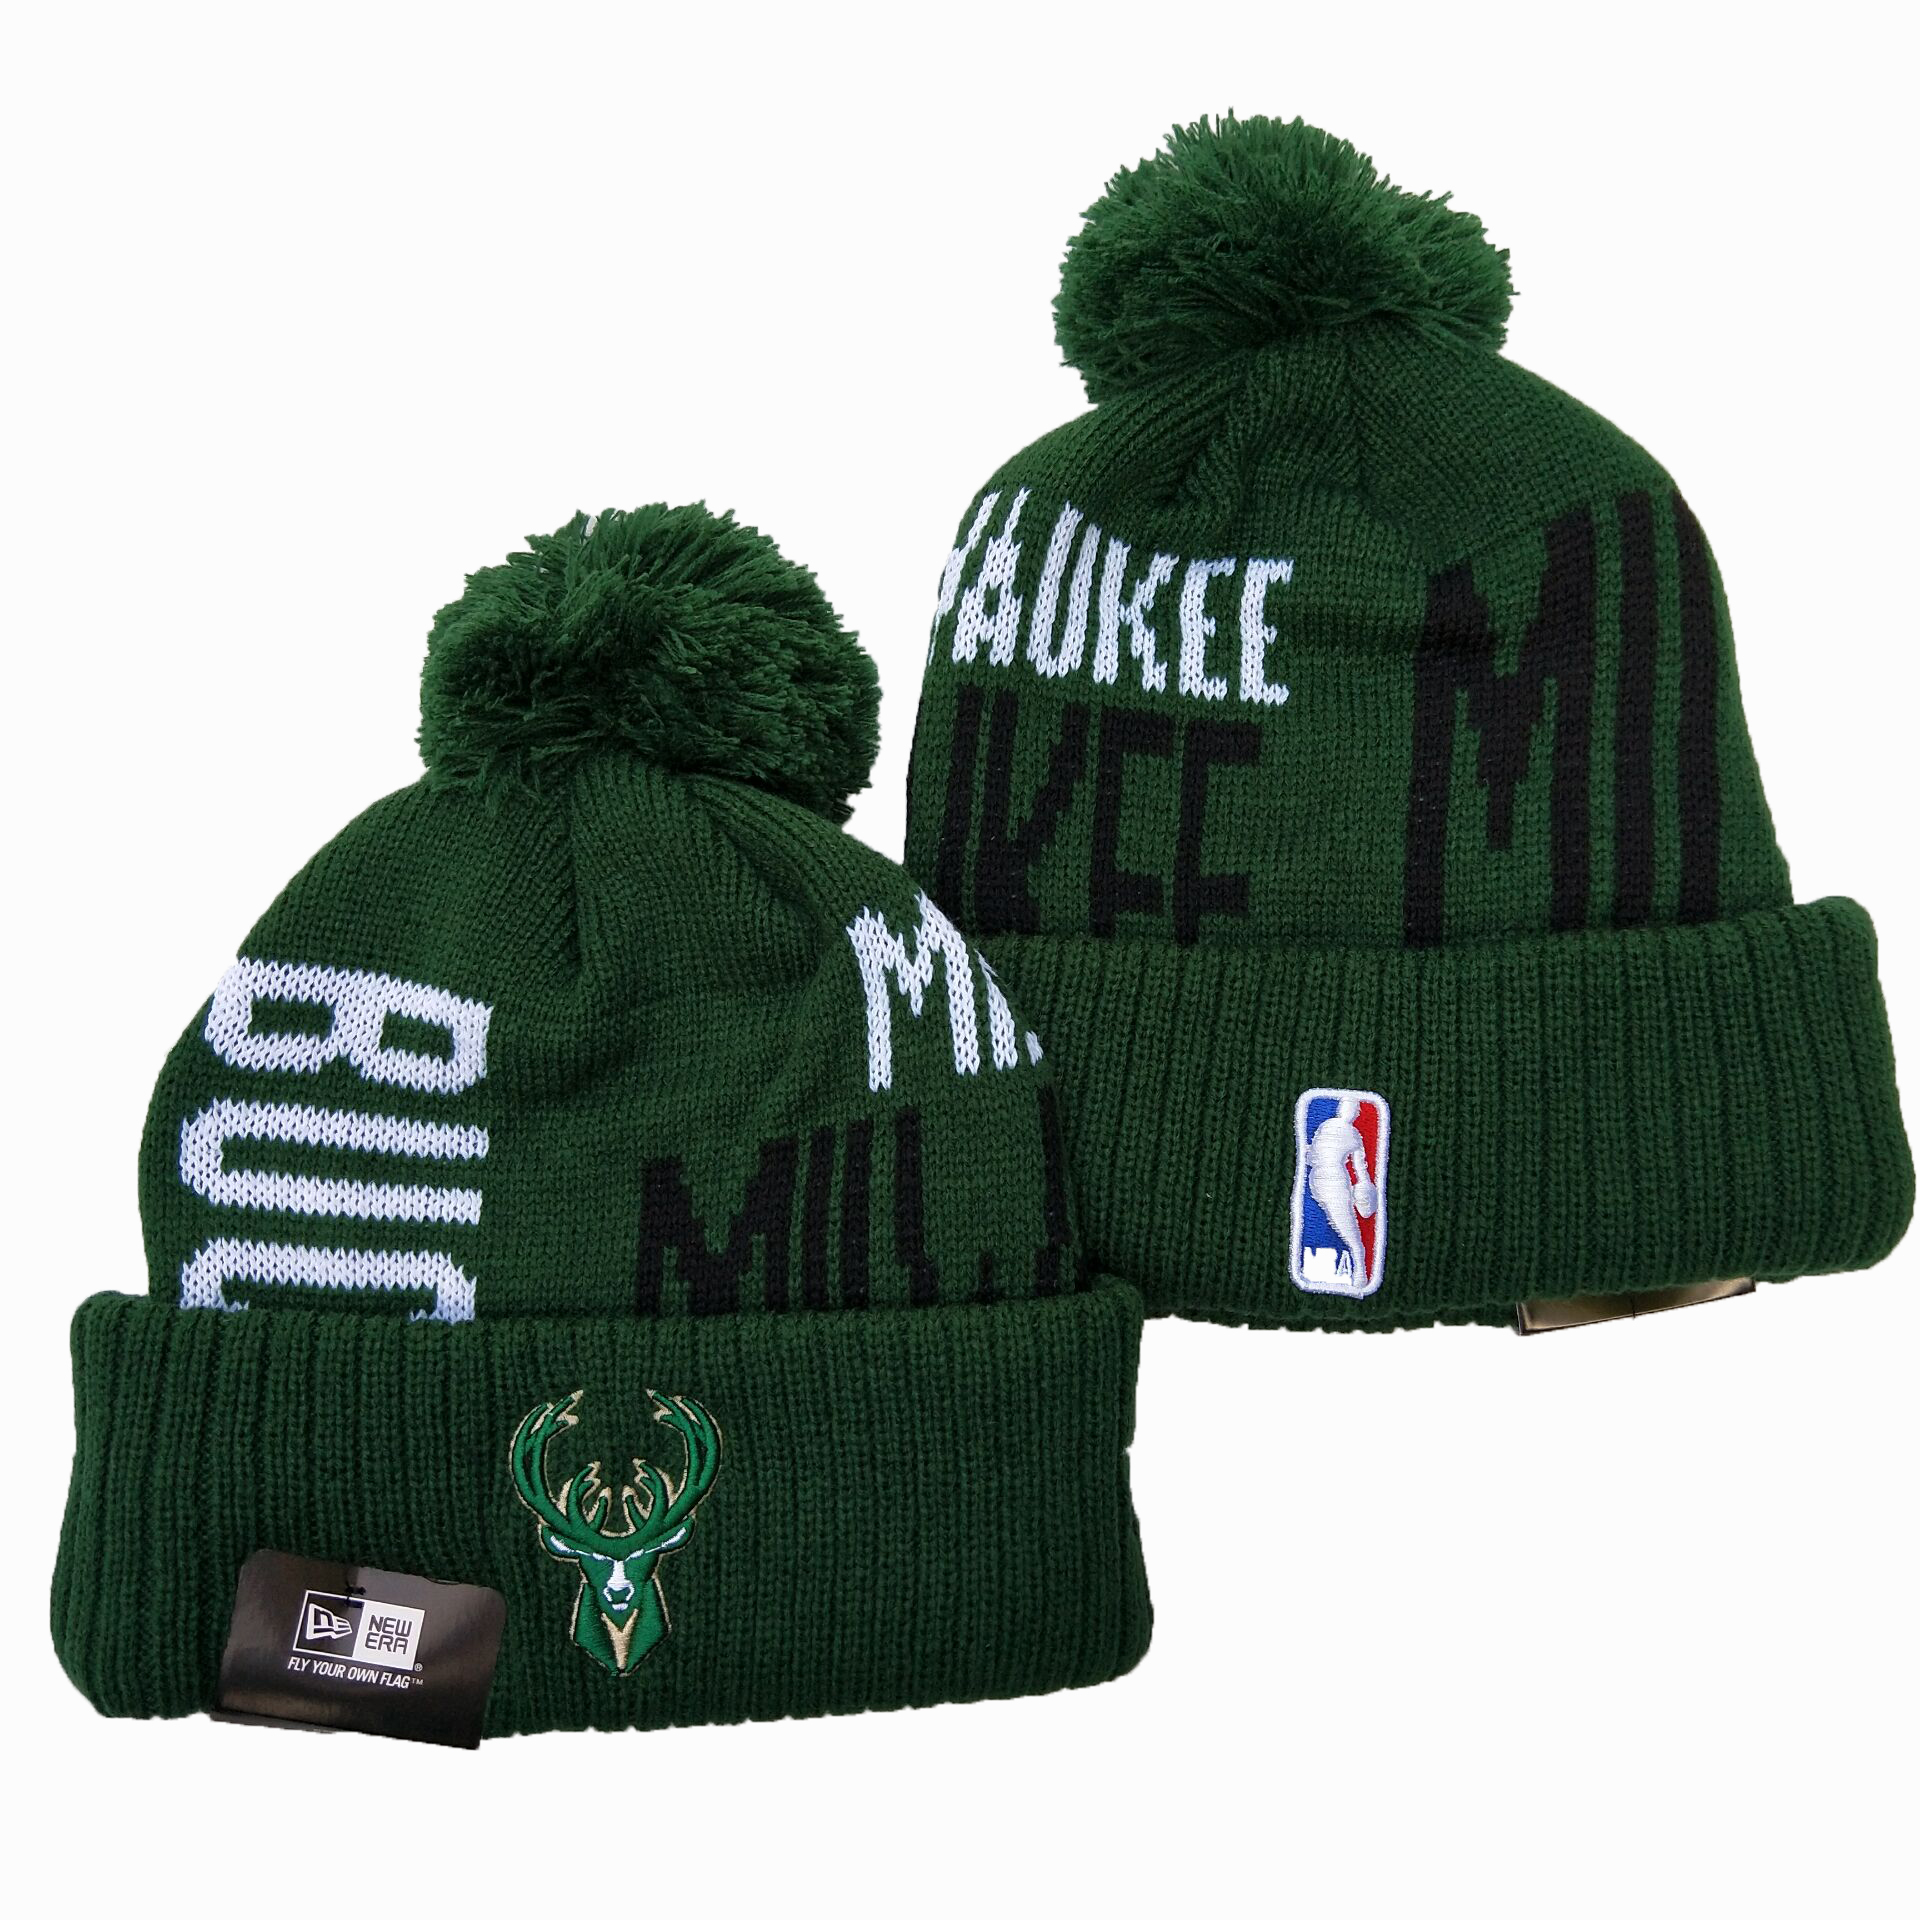 Bucks Team Logo Green Pom Knit Hat YD